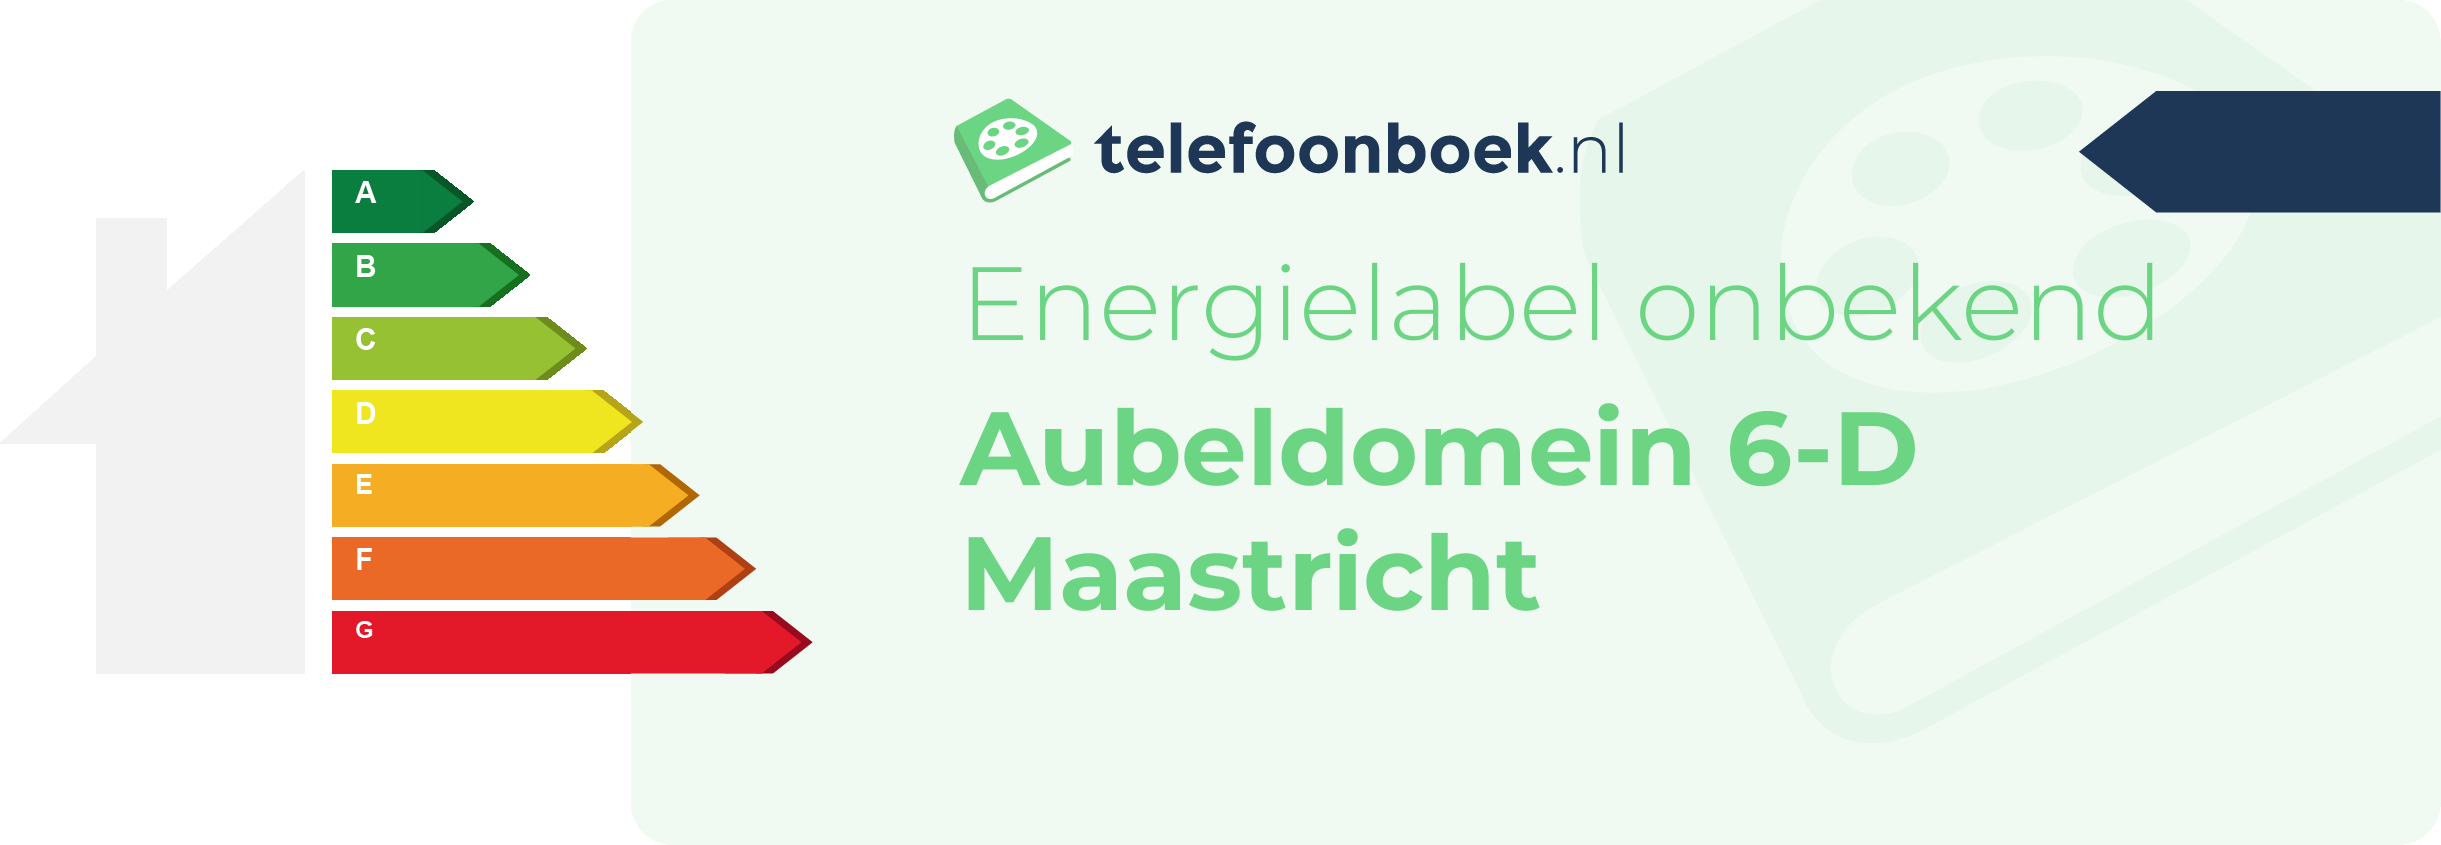 Energielabel Aubeldomein 6-D Maastricht